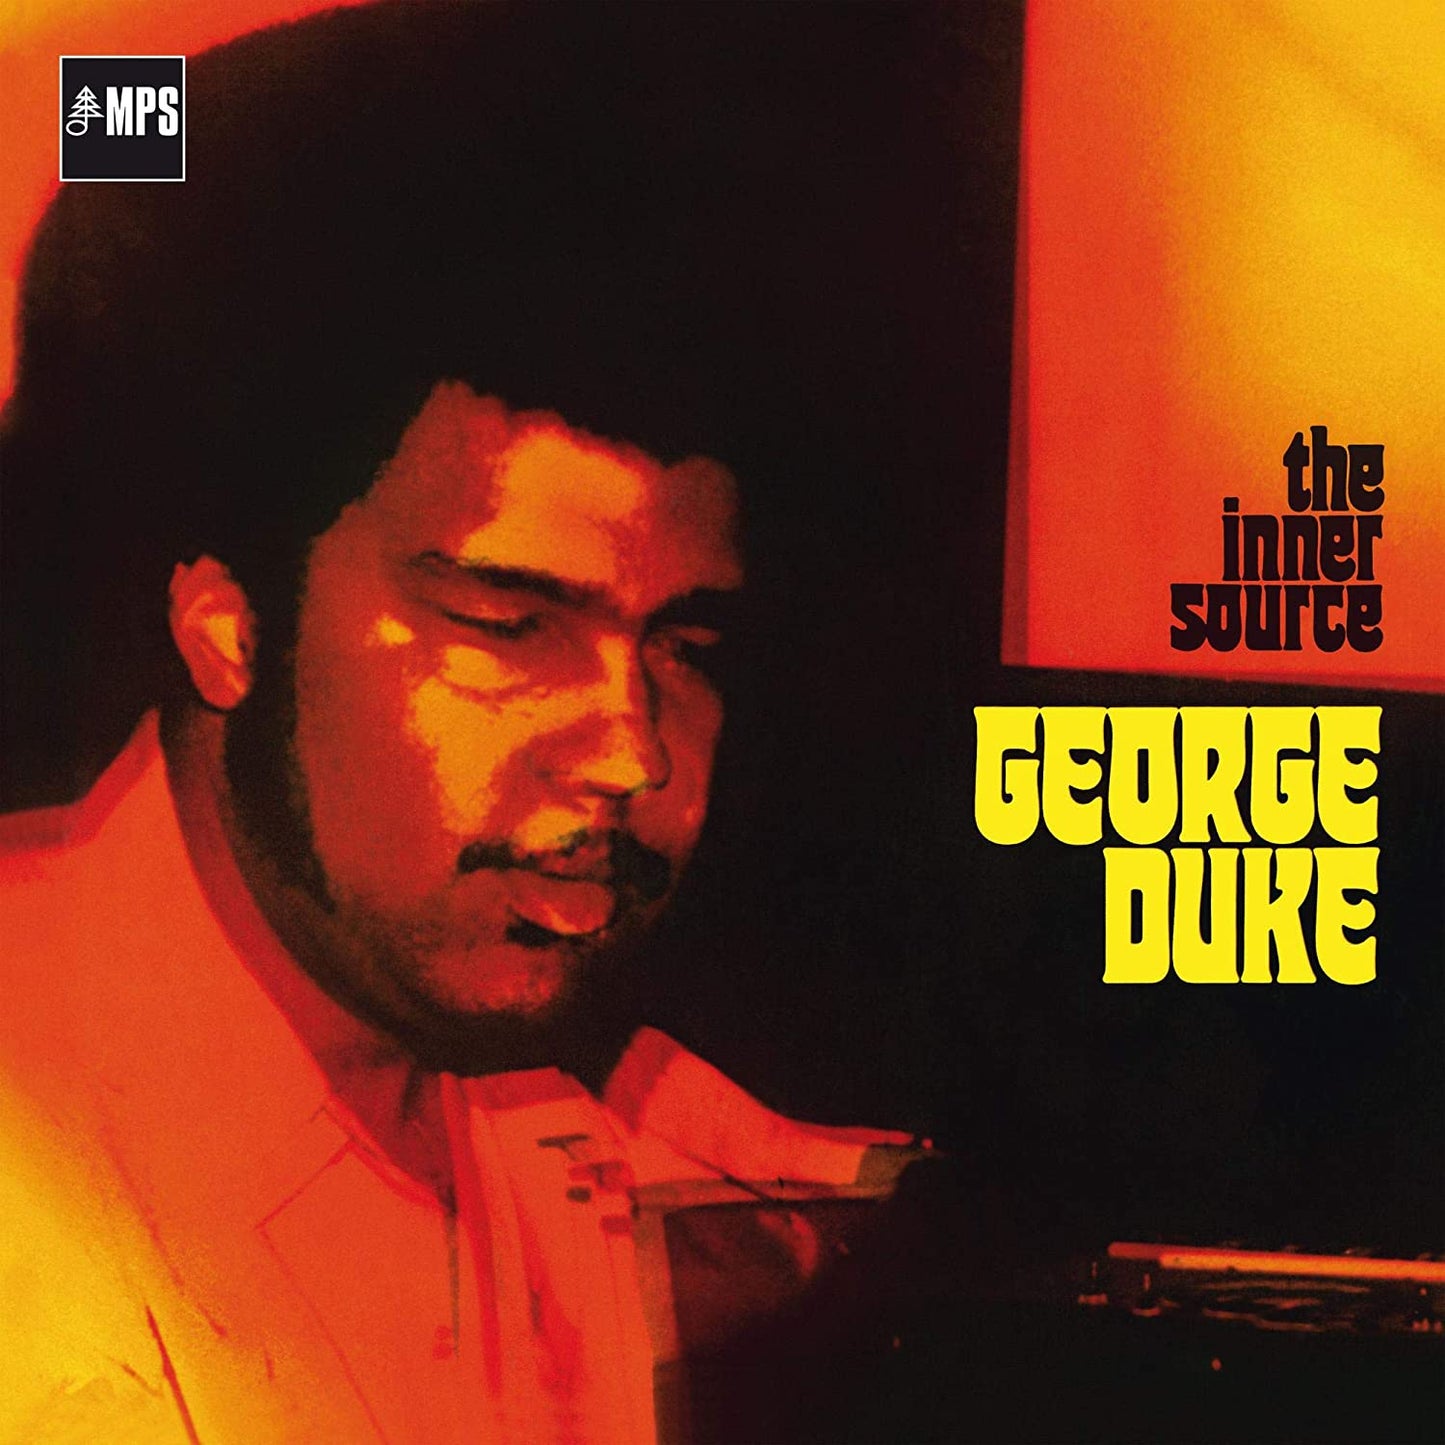 George Duke - The Inner Source - CD